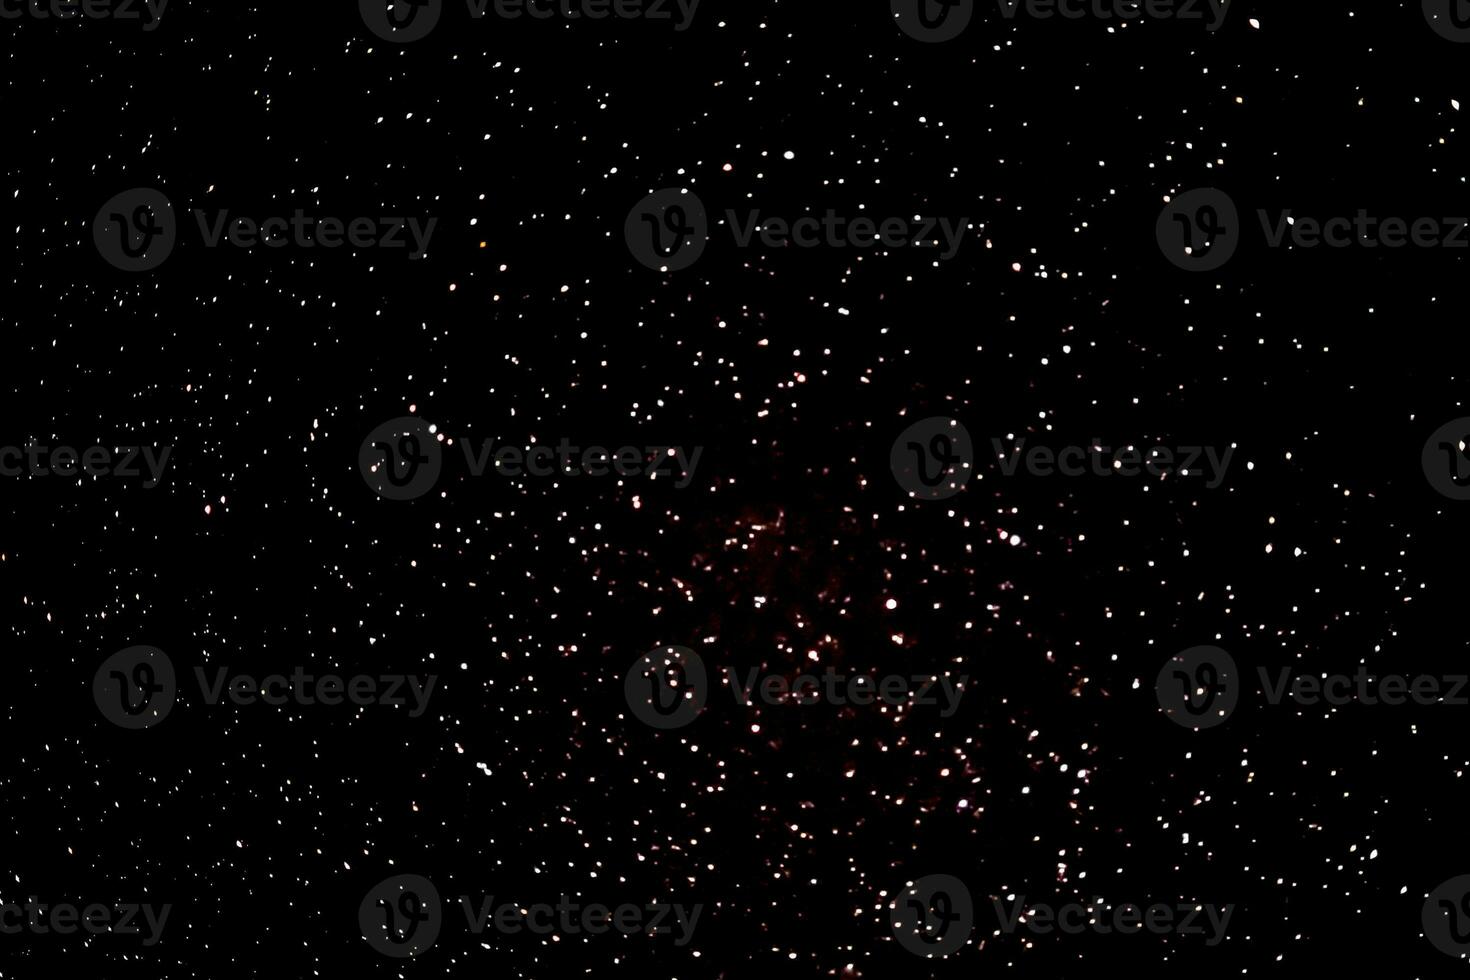 Sterne im das Nacht Himmel, Bild Sterne Hintergrund Textur. foto